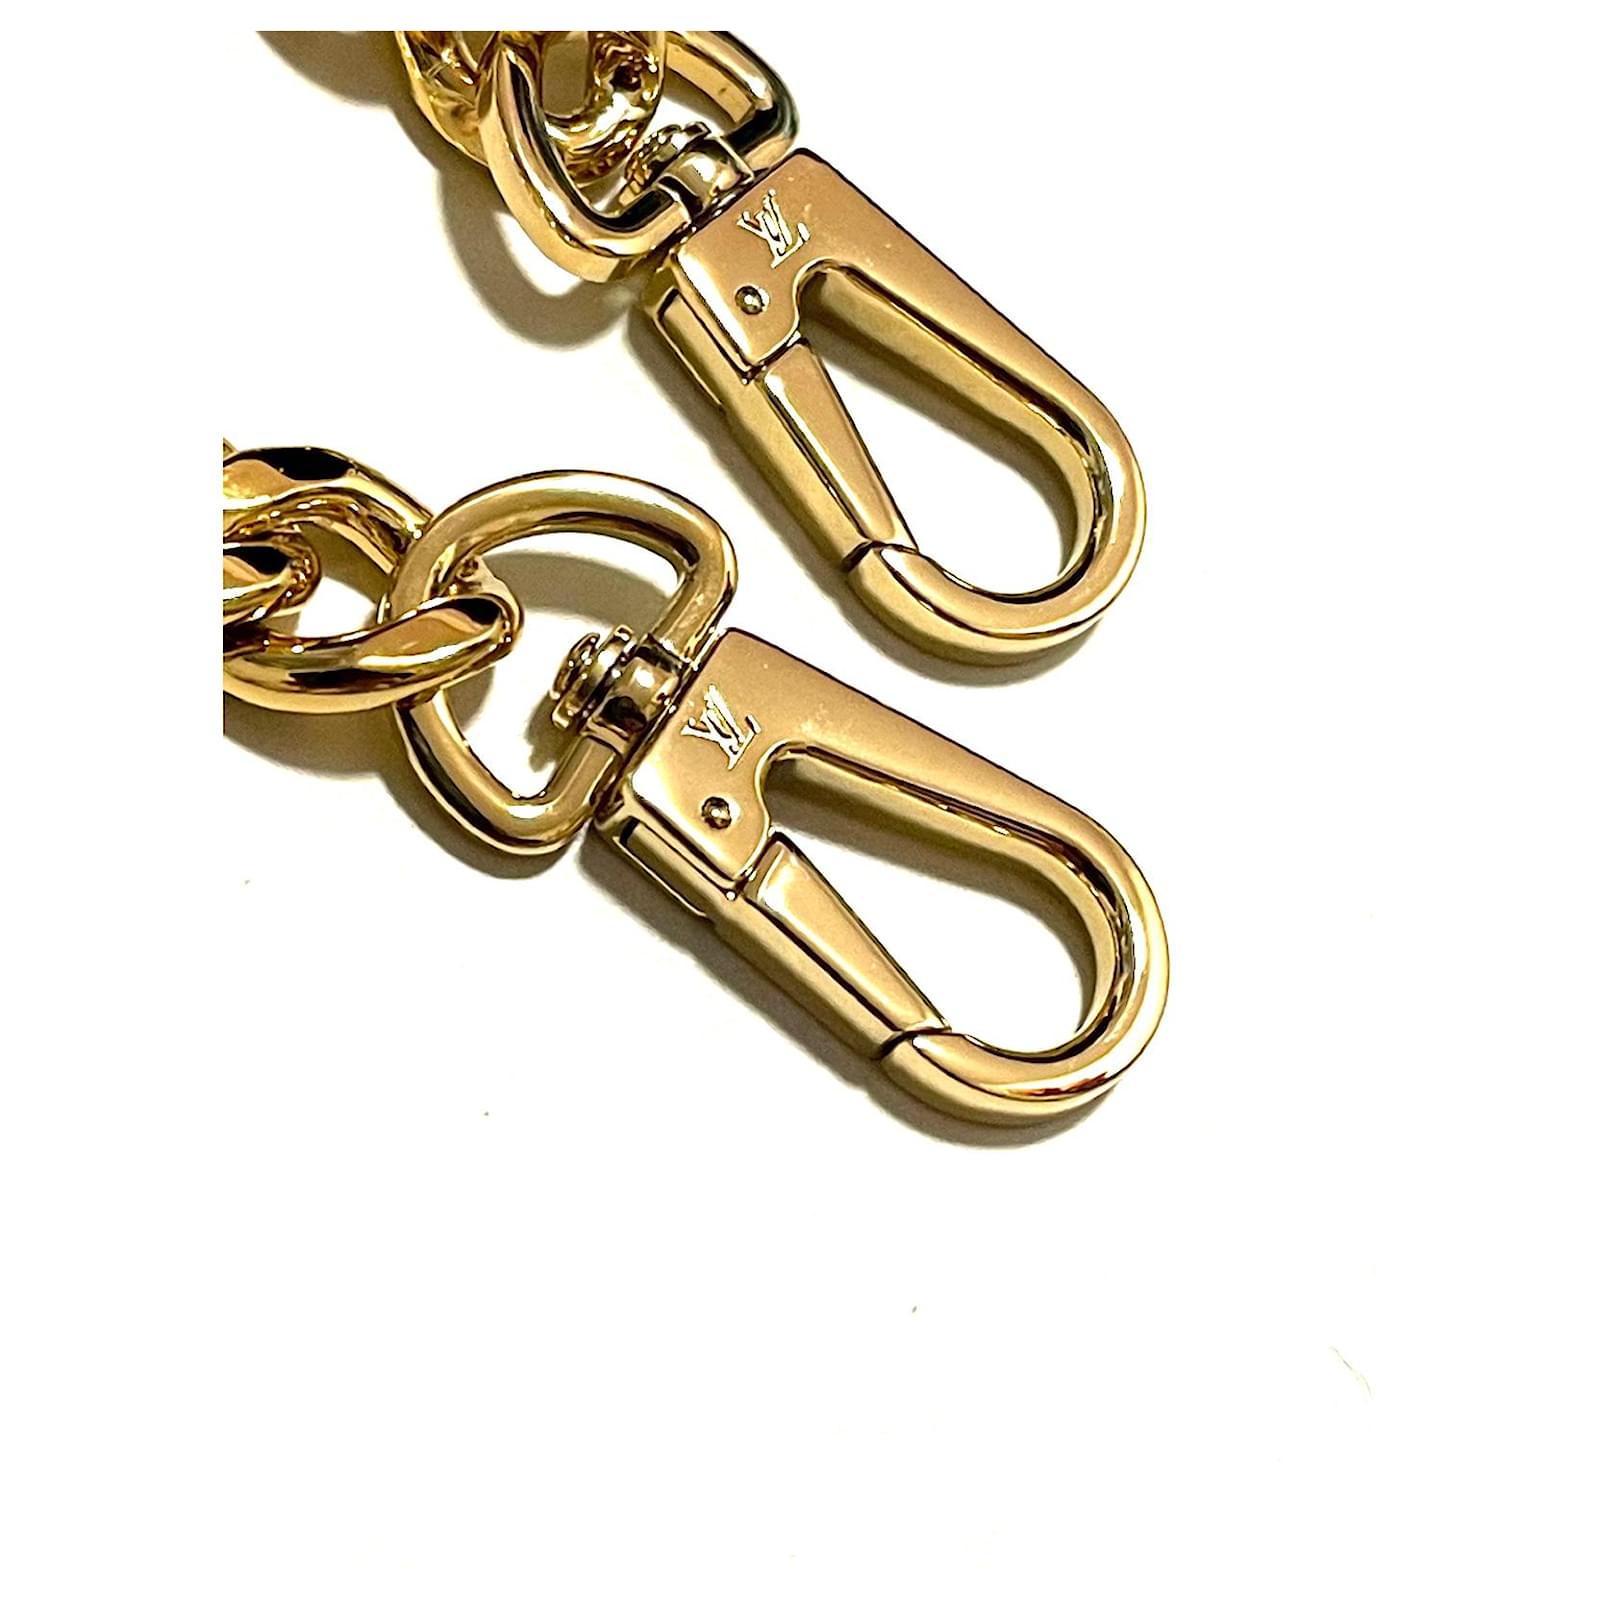 Louis Vuitton Key Chain Pochette Strap Extender in Golden Brass - SOLD